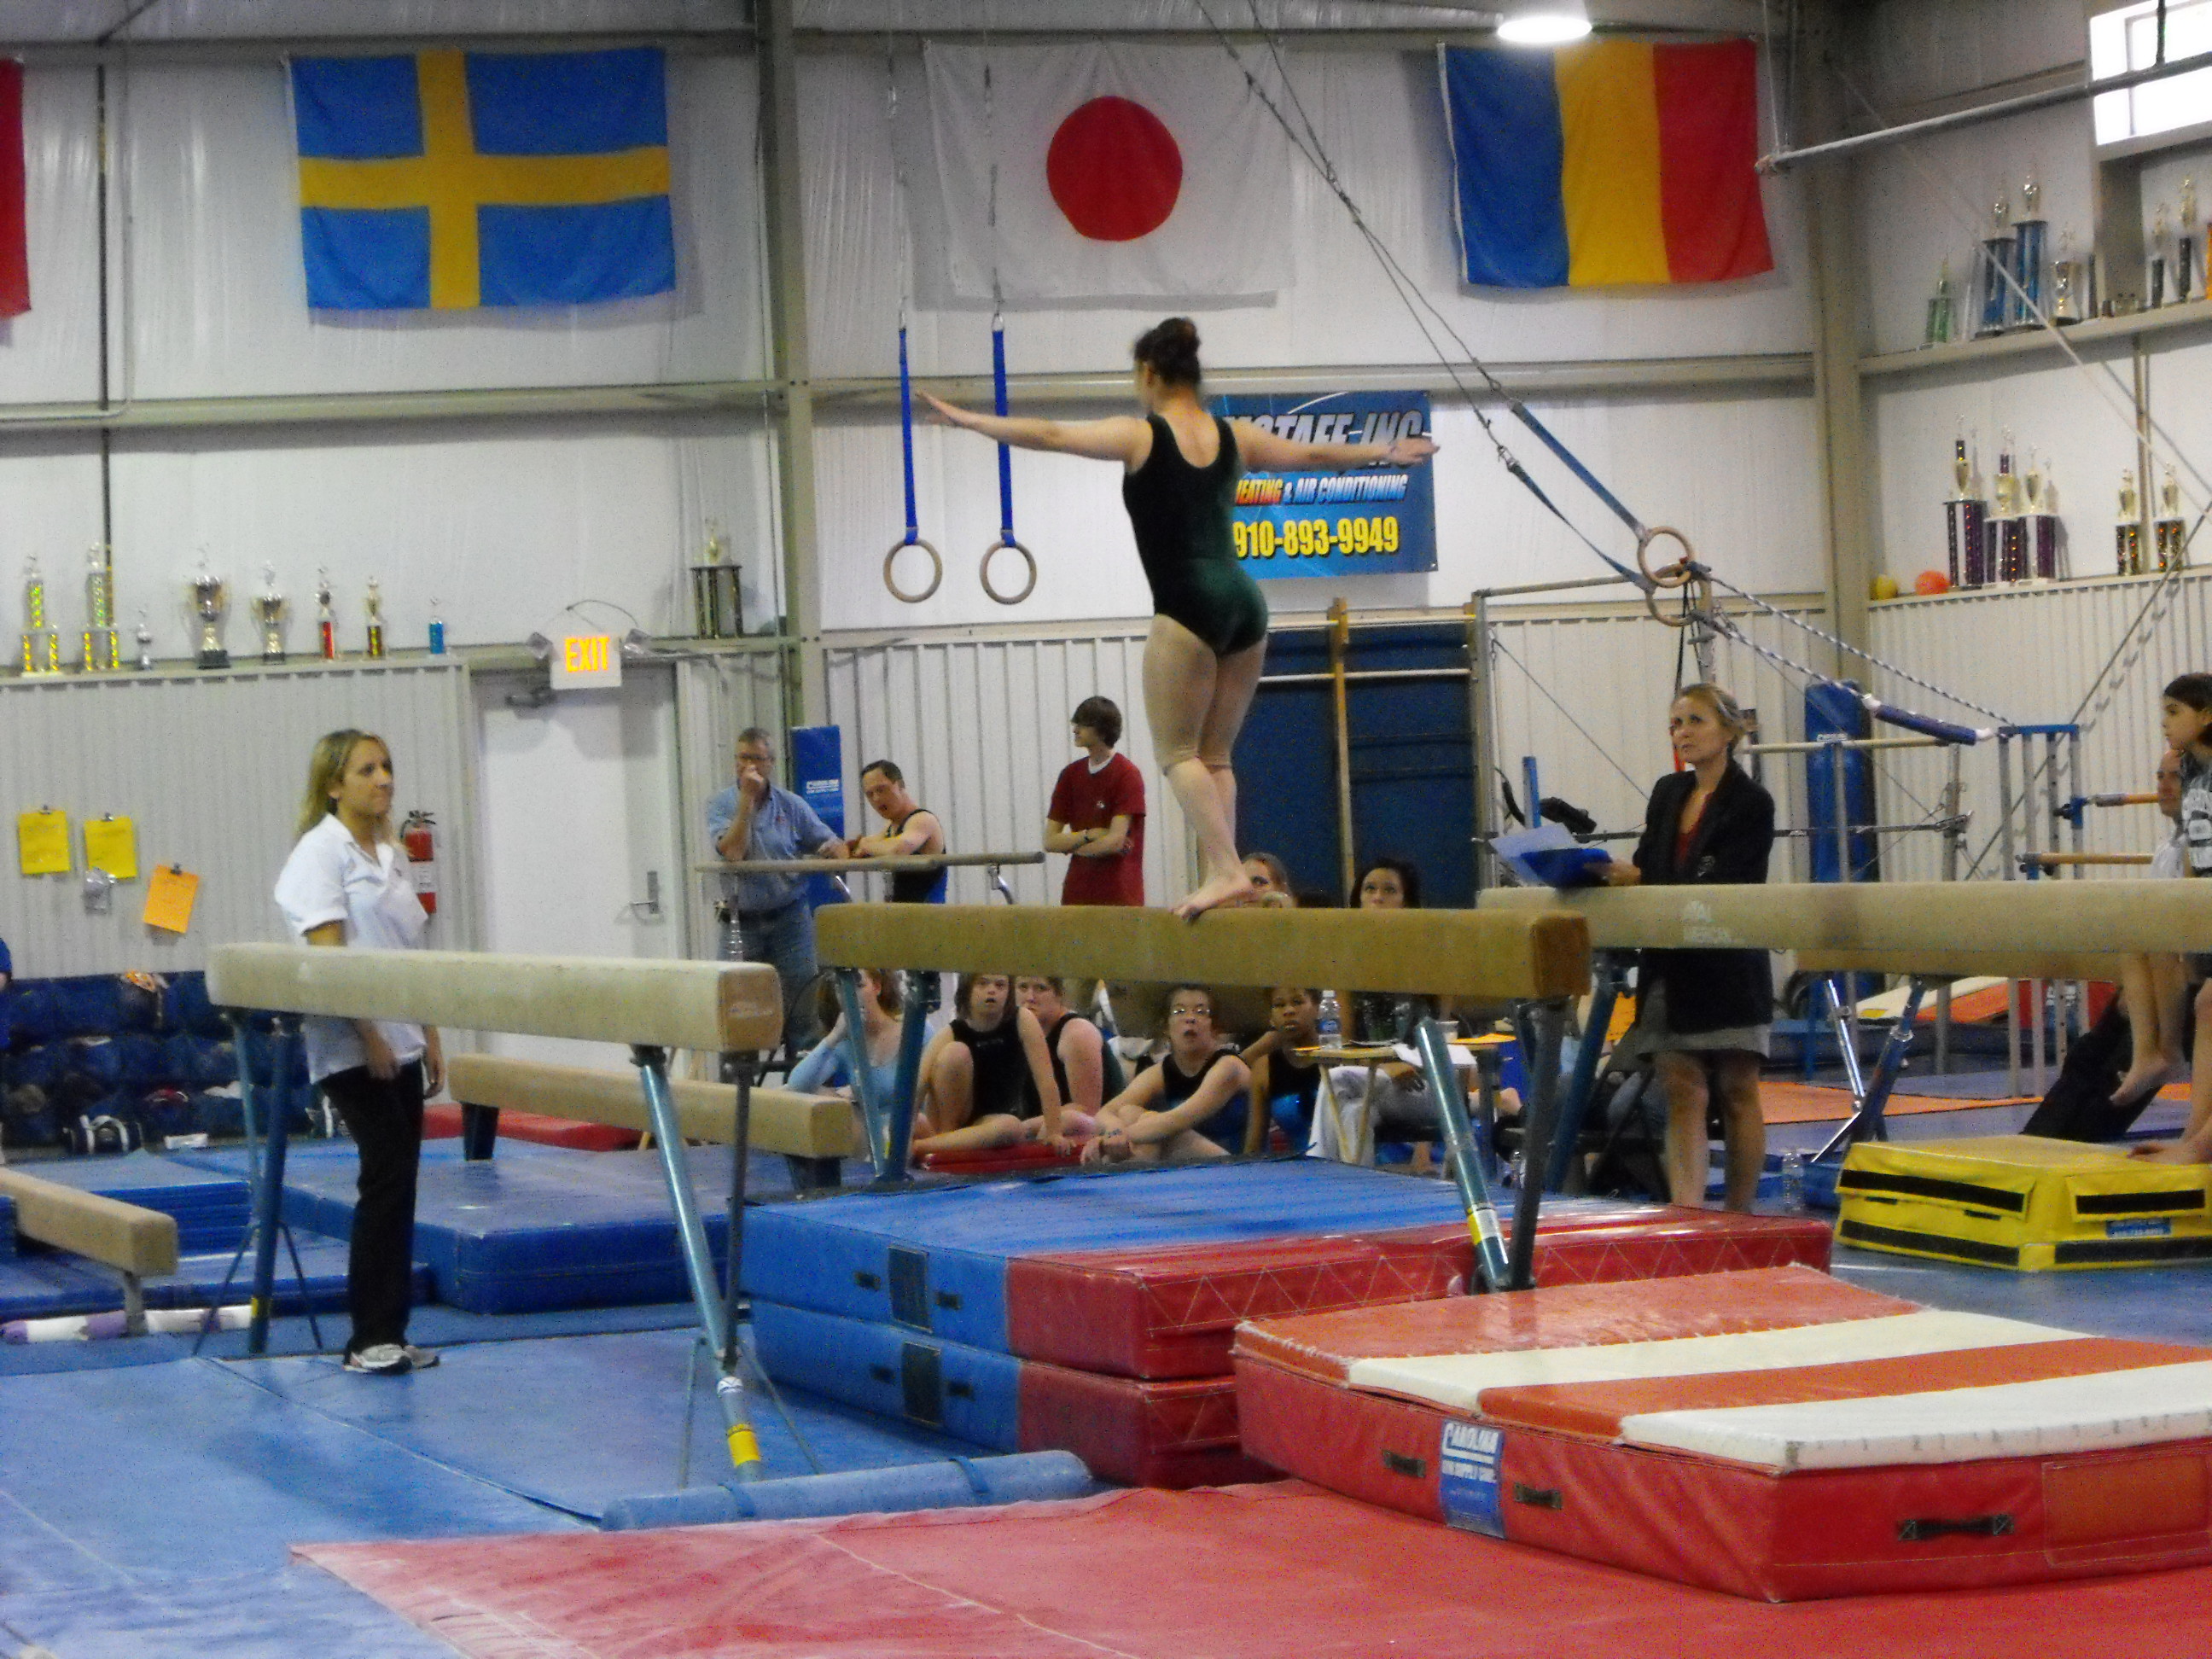 ./2010/Gymnastics/sonc gymn qualf Apex0010.JPG